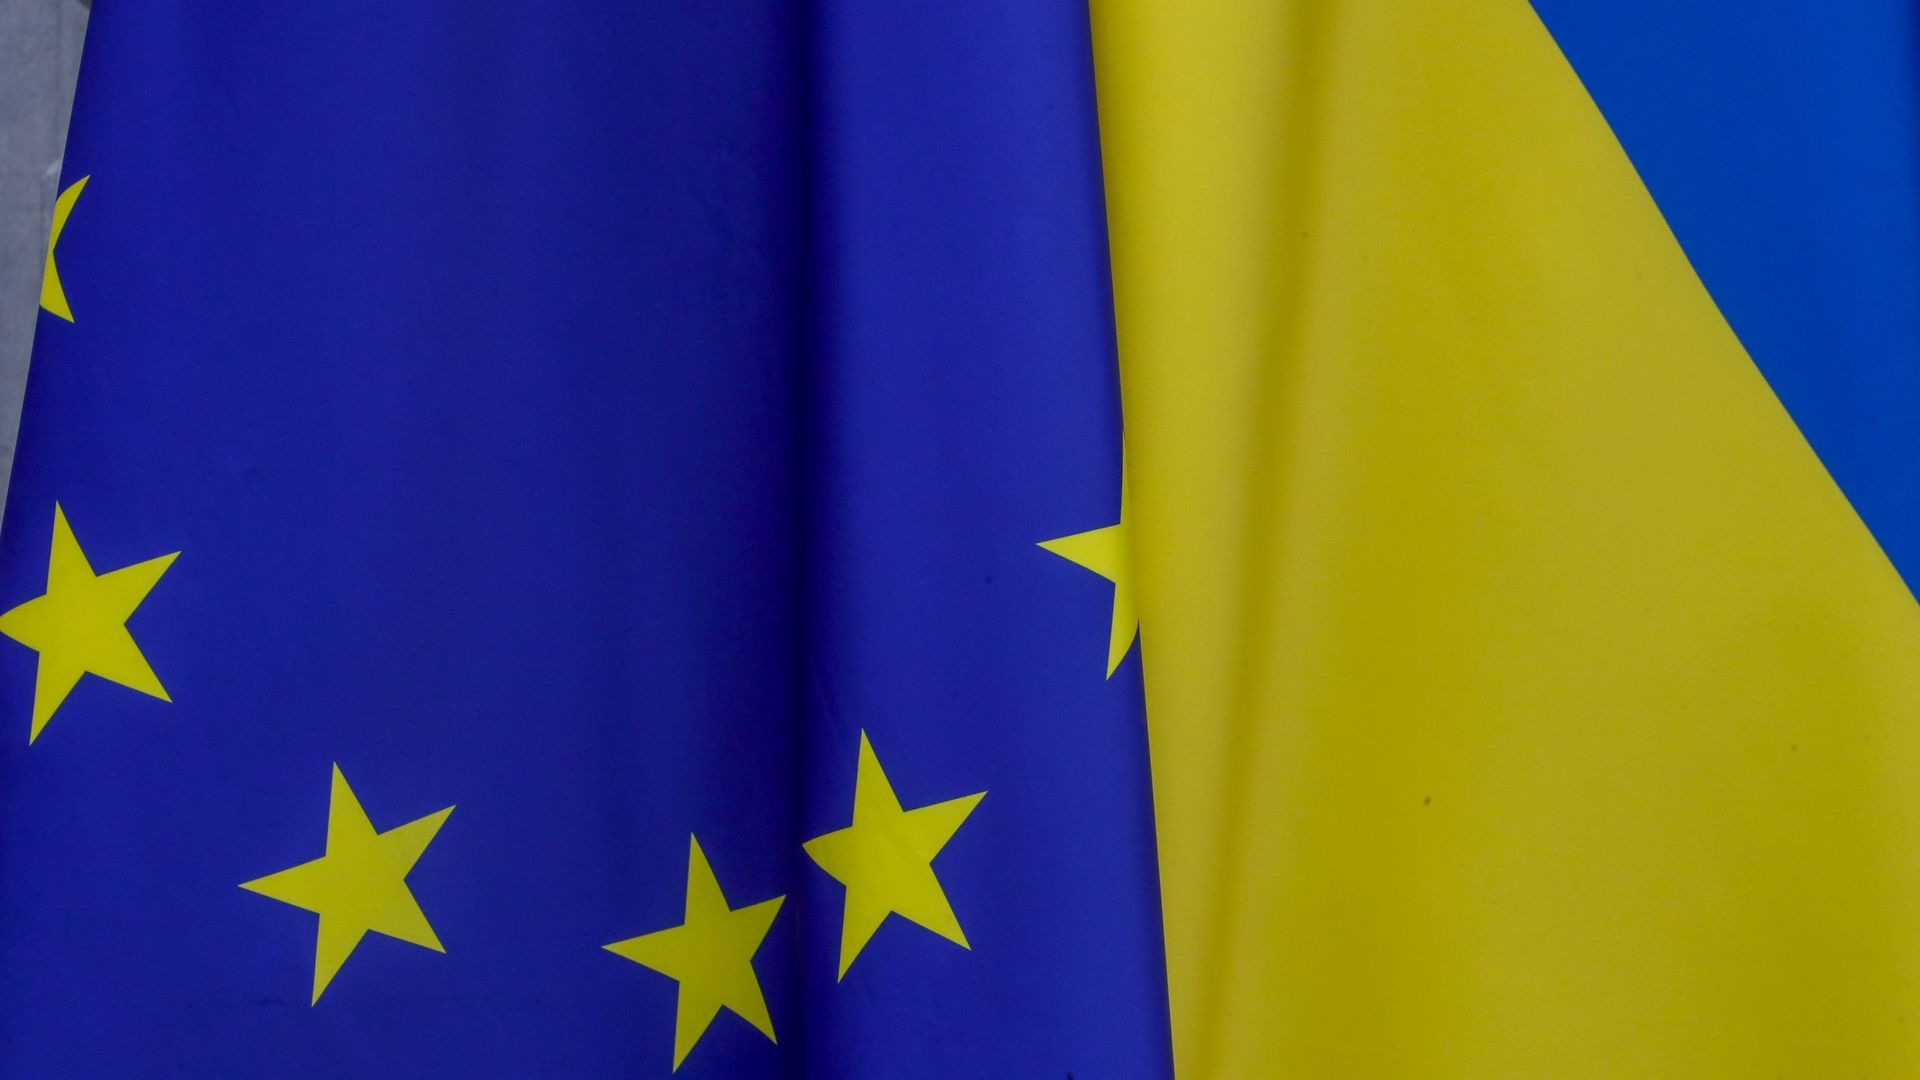 Les drapeaux de l’Ukraine et de l’Europe